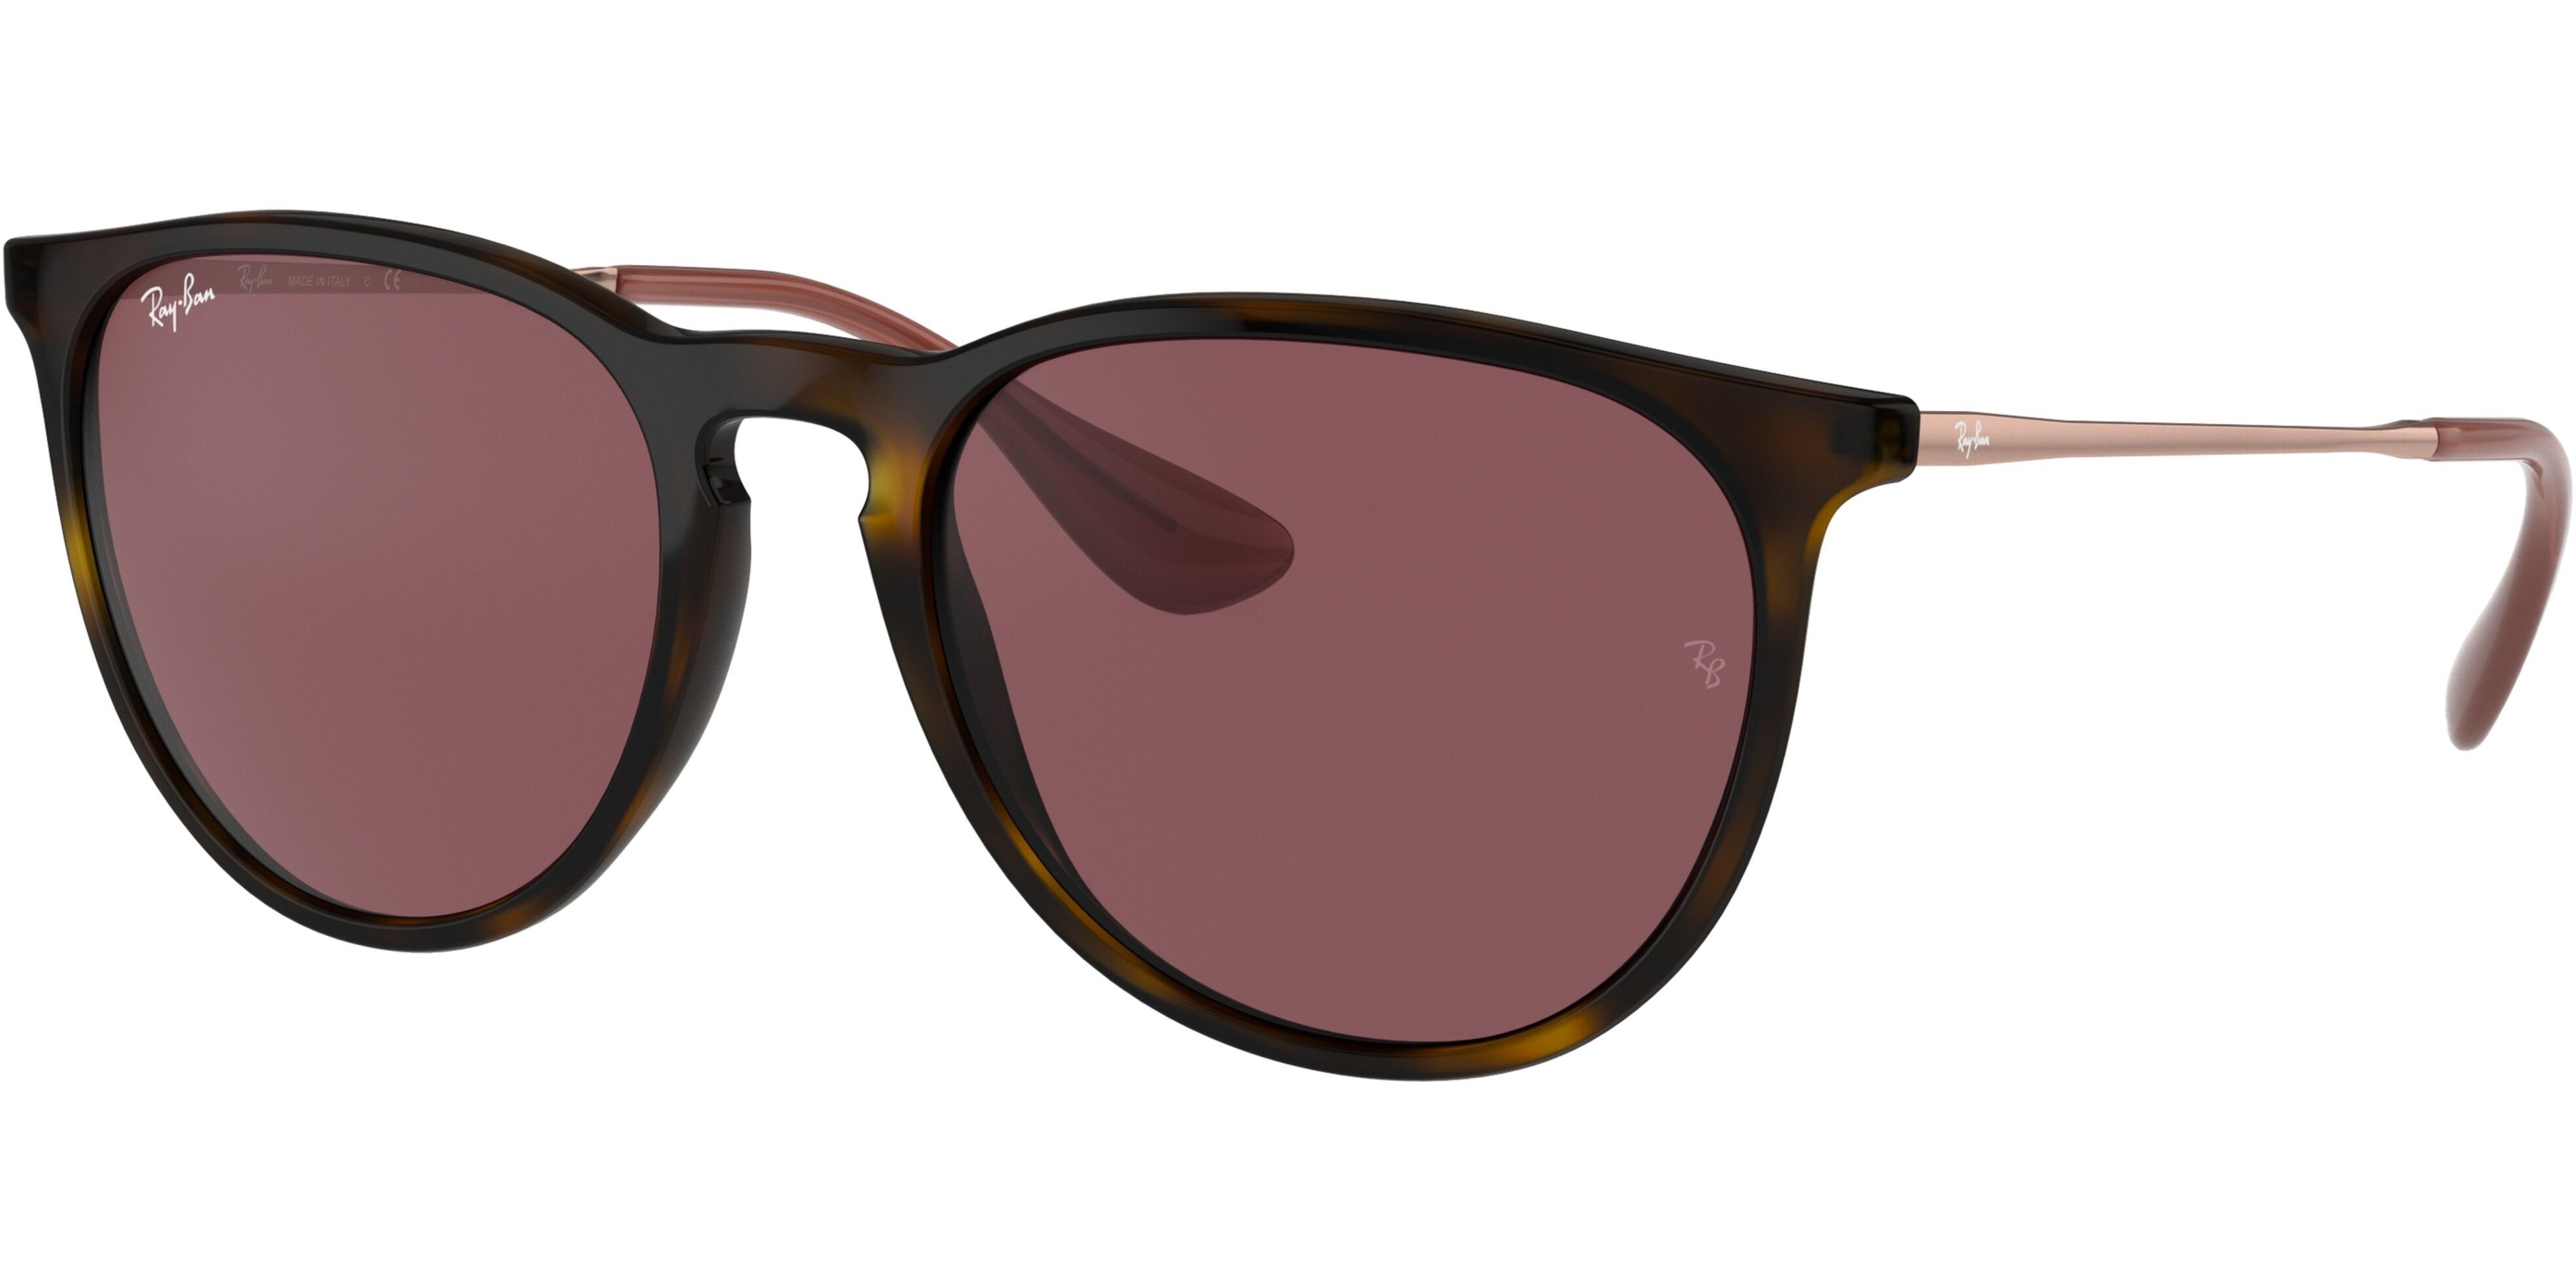 Sluneční brýle Ray-Ban® model 4171, barva obruby hnědá lesk bronzová, čočka fialová, kód barevné varianty 639175. 